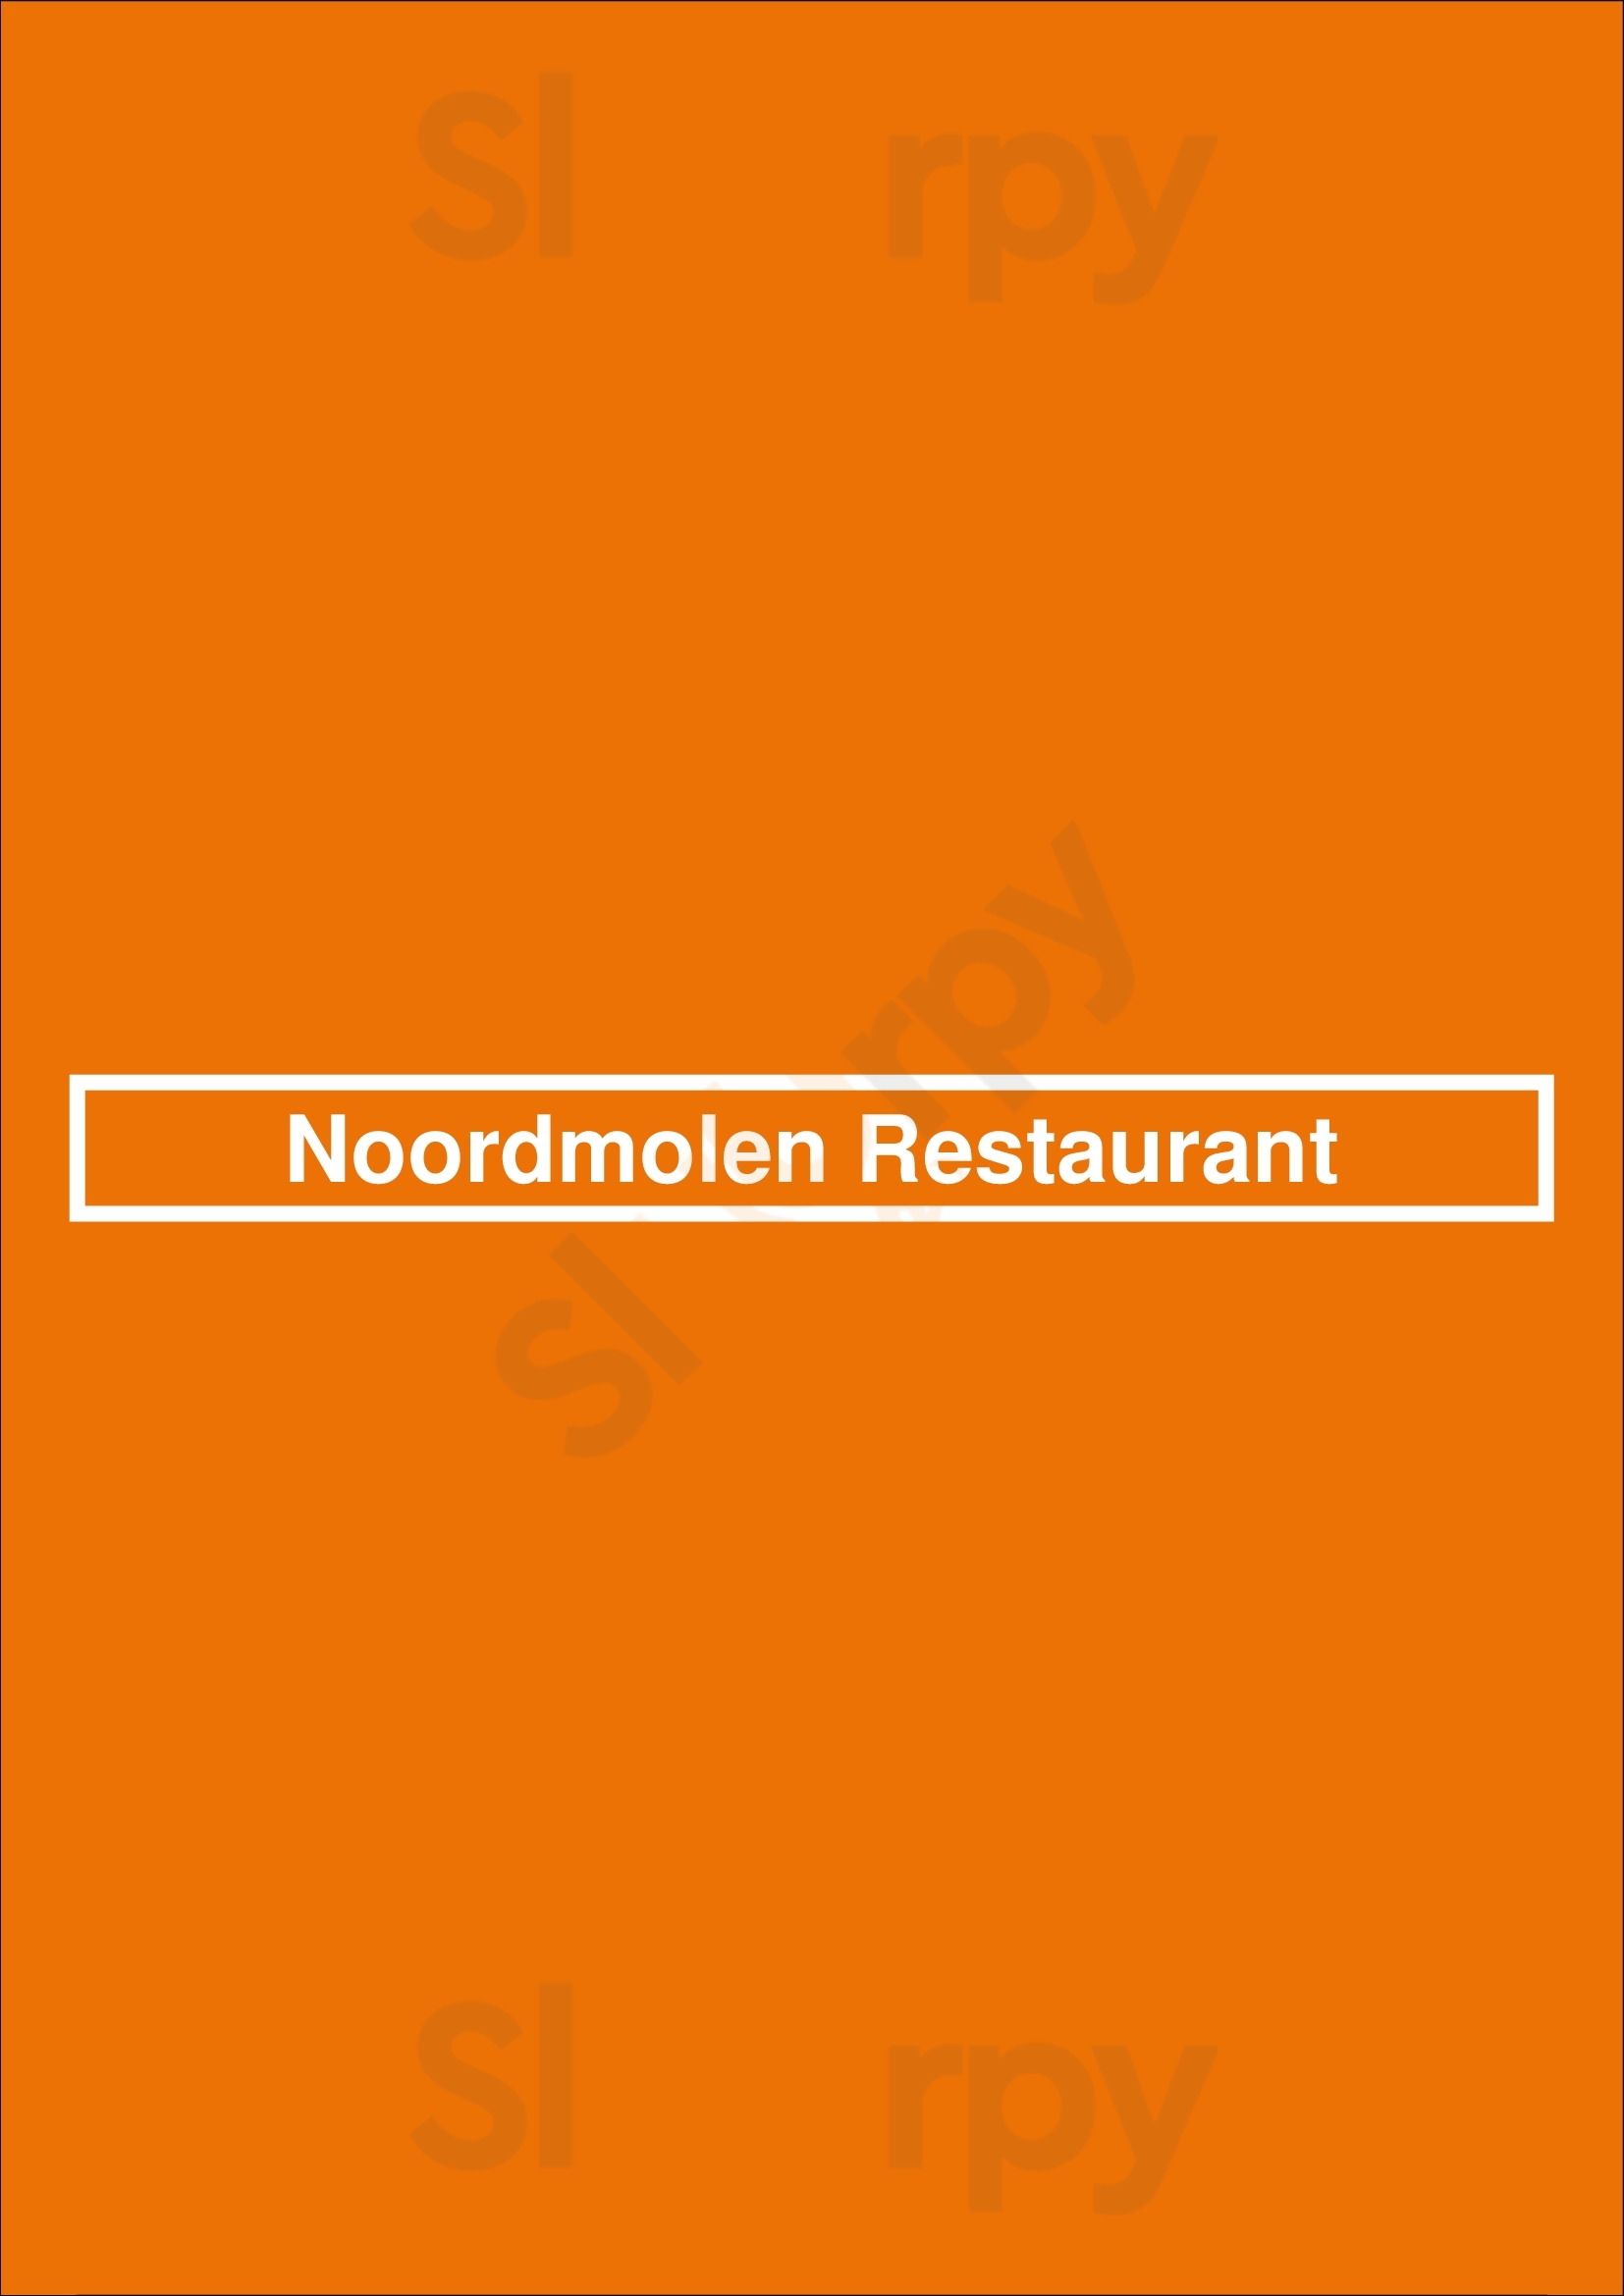 Noordmolen Restaurant Schiedam Menu - 1